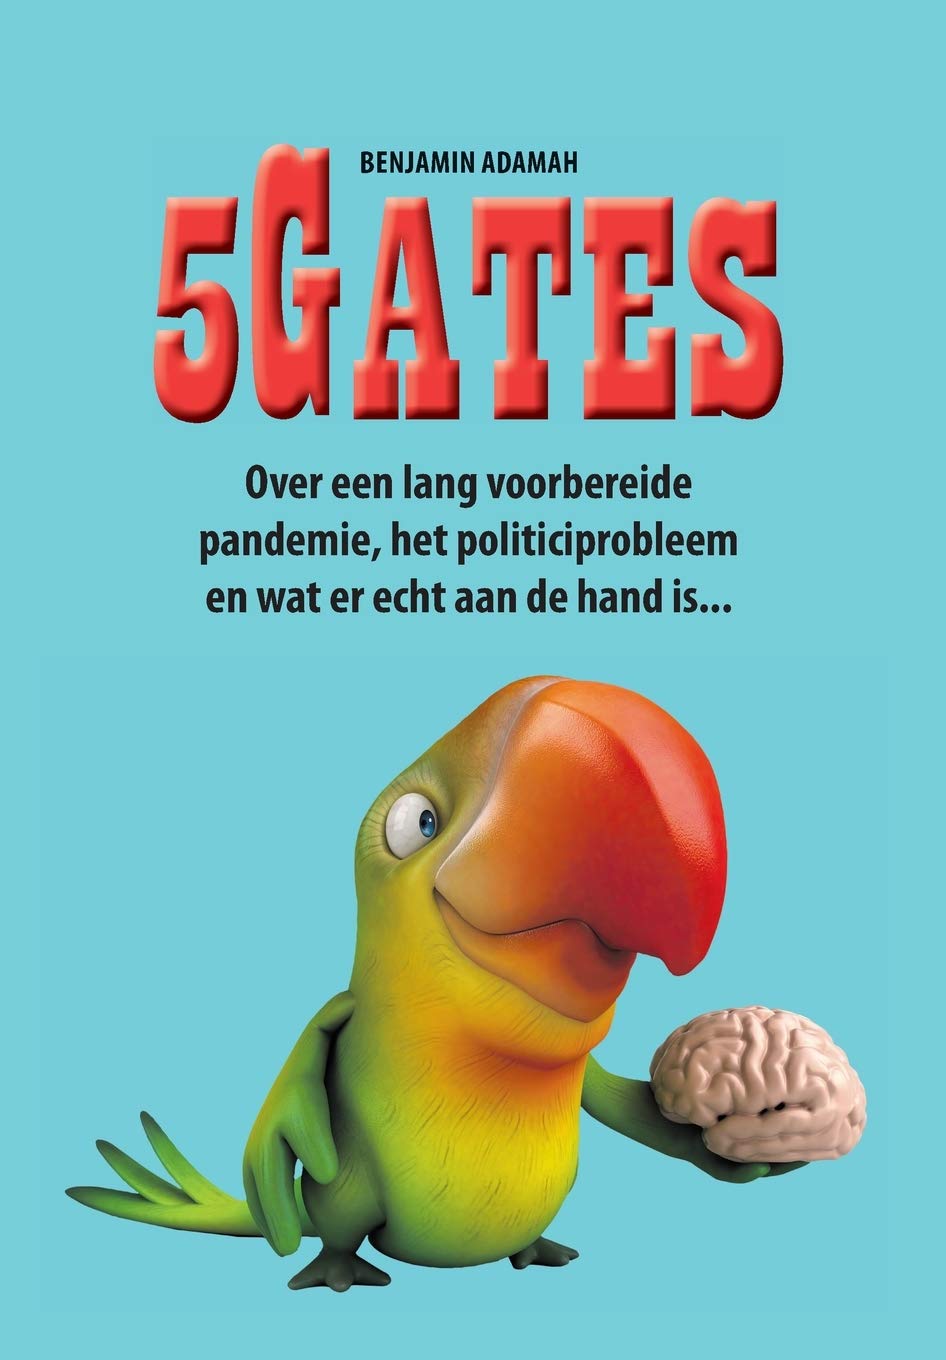 5Gates: Over een lang voorbereide pandemie, het politiciprobleem en wat er echt aan de hand is. (Dutch Edition) - Benjamin Adamah